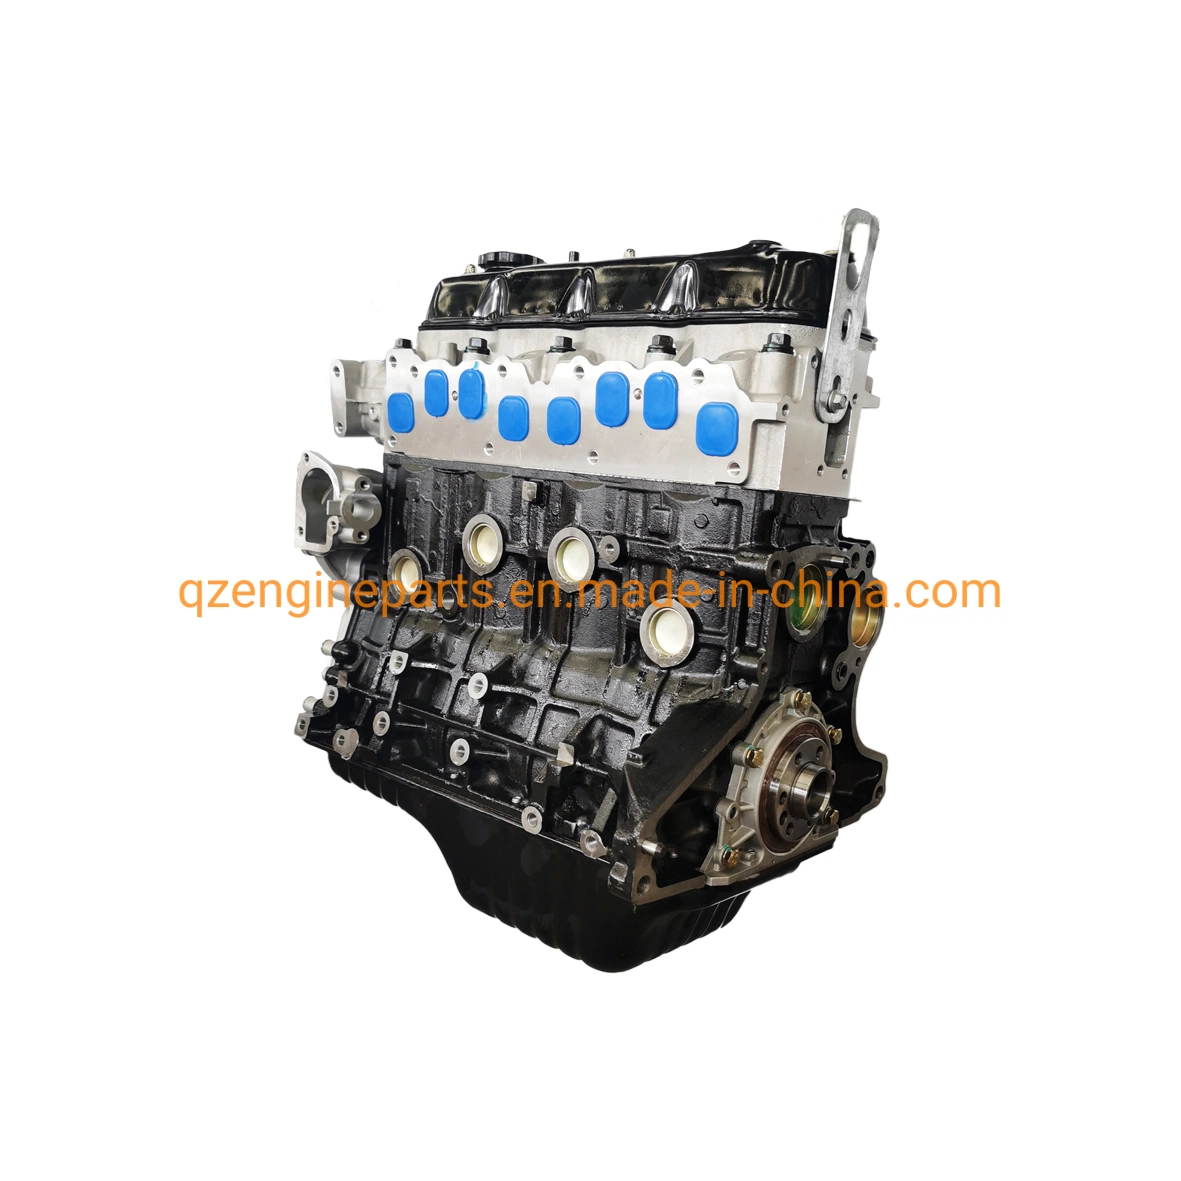 Benziner Auto 4 Zylinder Motor mit bloßer Motoreinheit, langer Block 4y 491q Motor für Toyota Haice